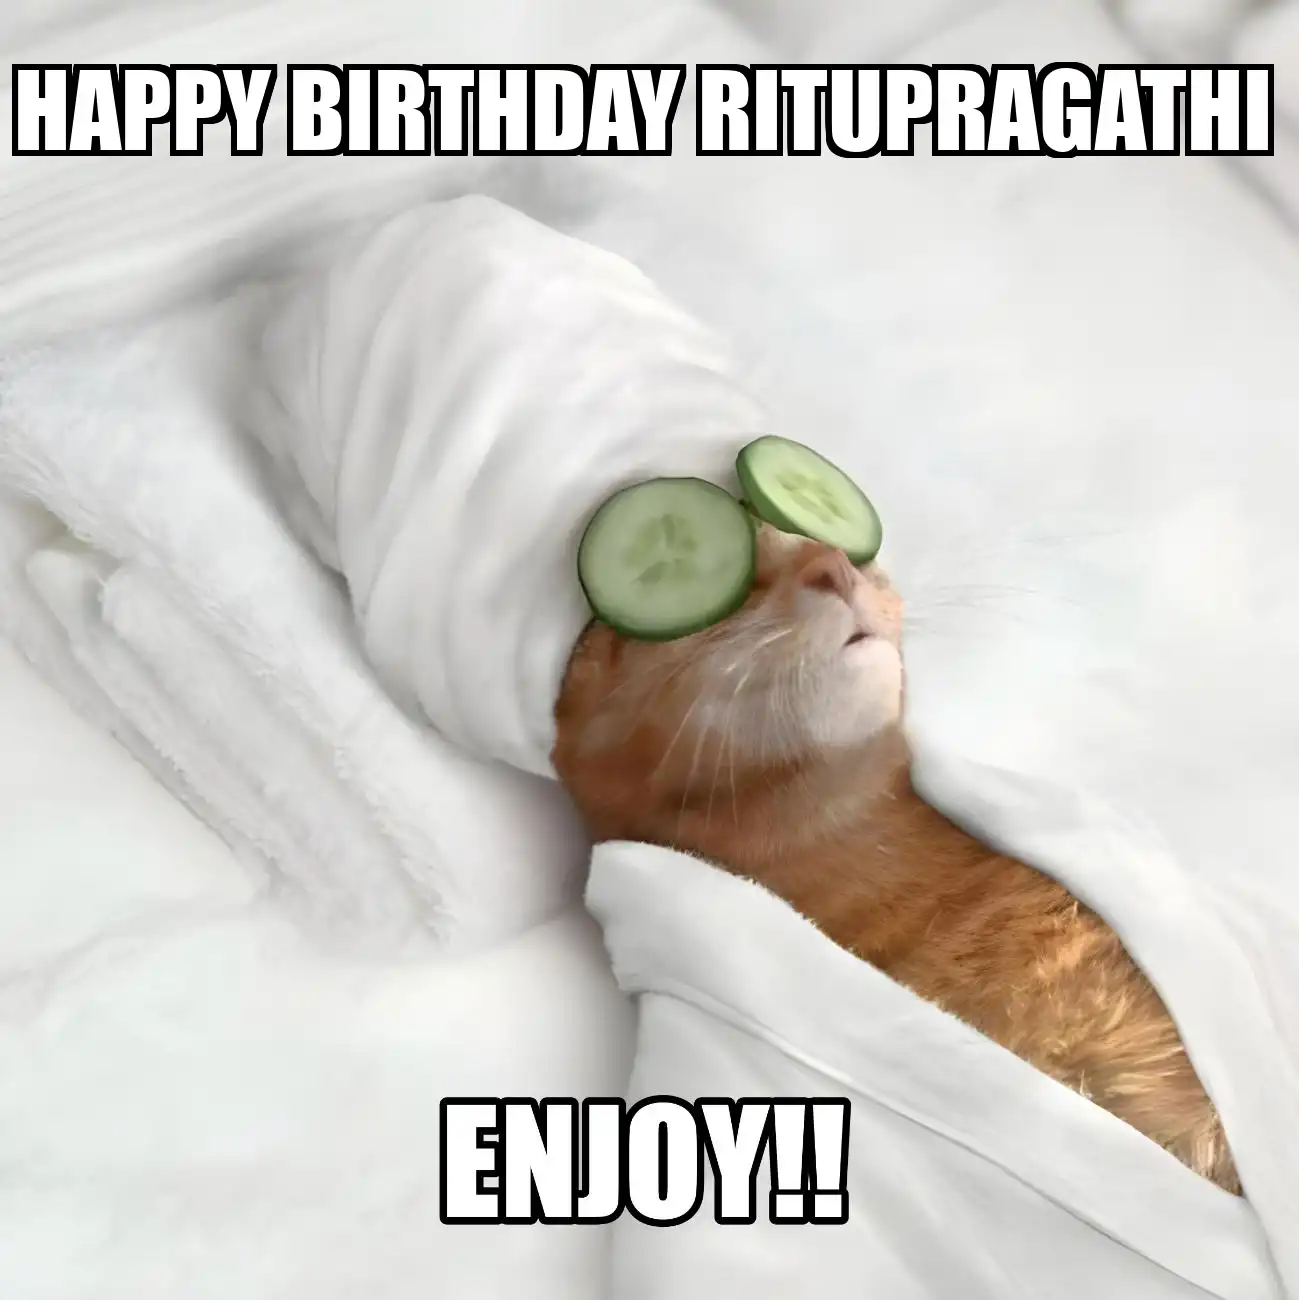 Happy Birthday Ritupragathi Enjoy Cat Meme